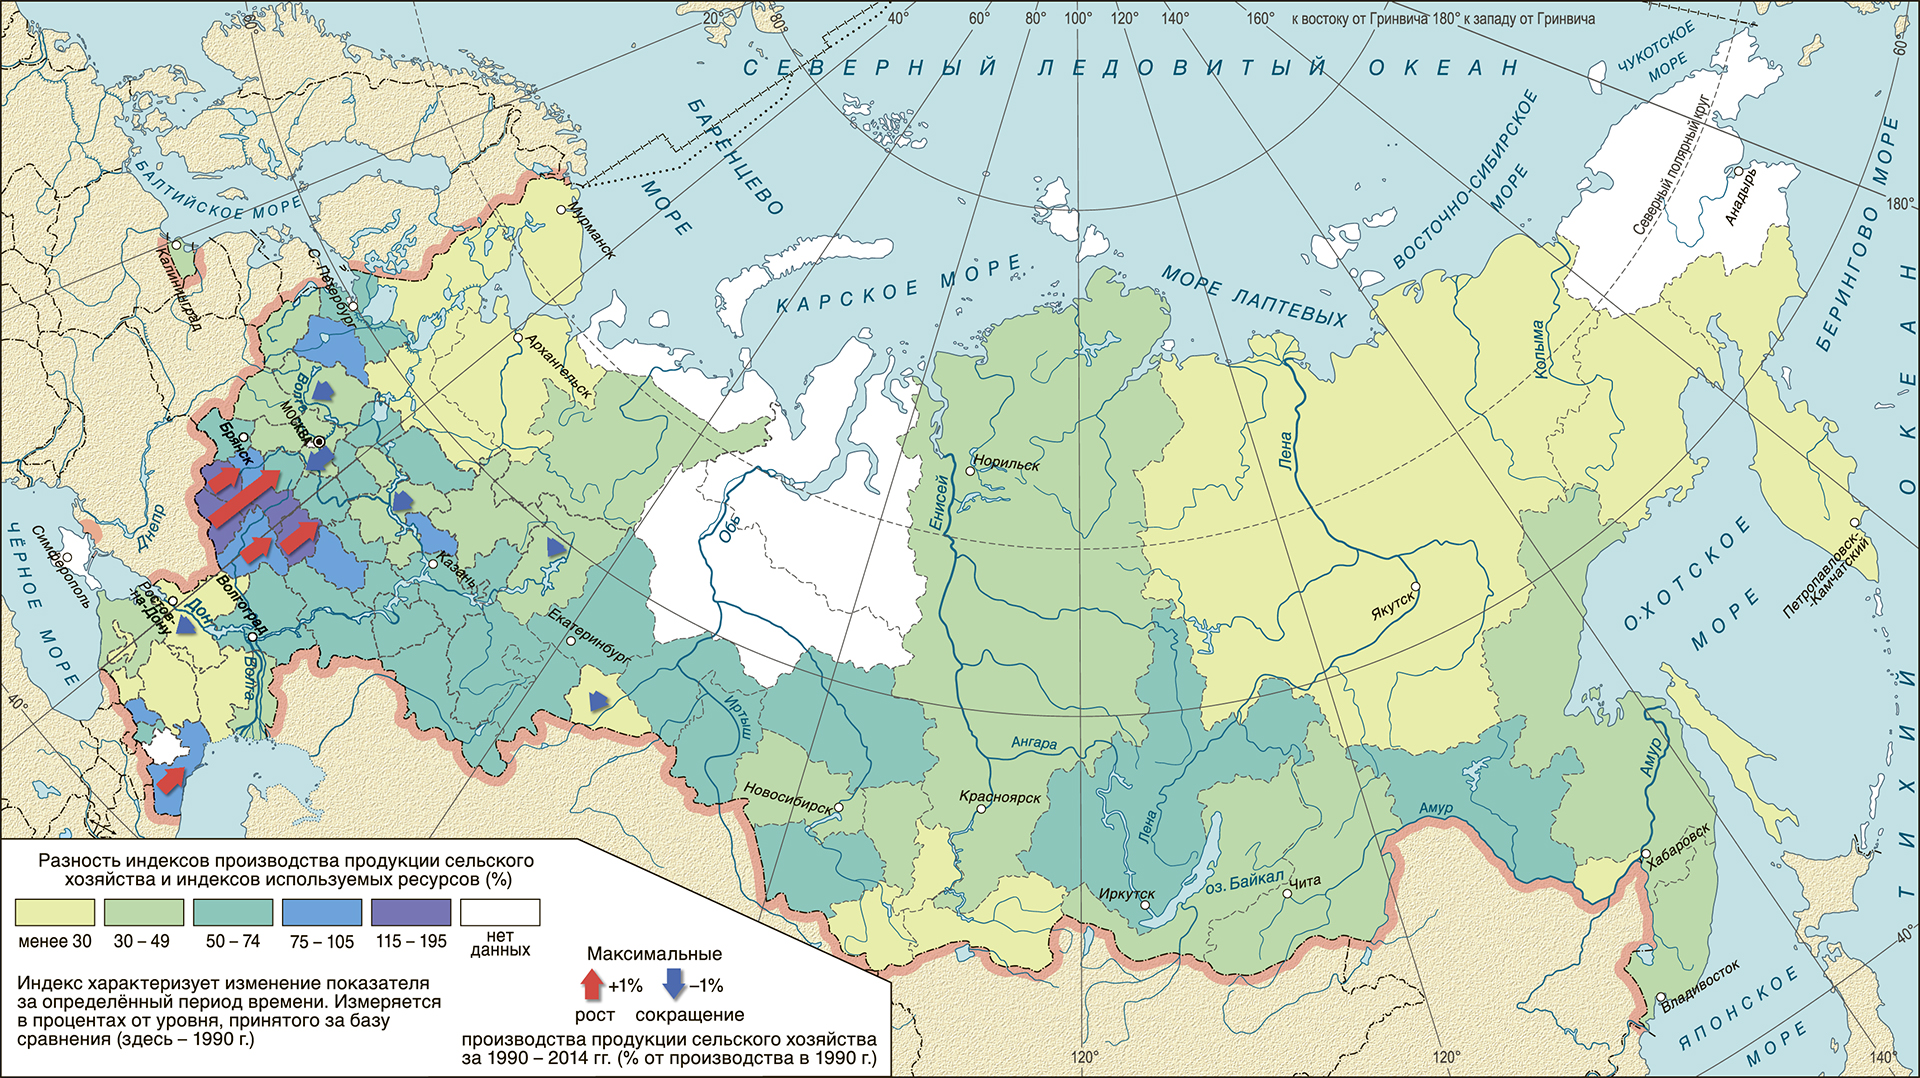  Изменение нагрузки на сельскохозяйственные ландшафты в регионах России, 1990–2014 гг. 